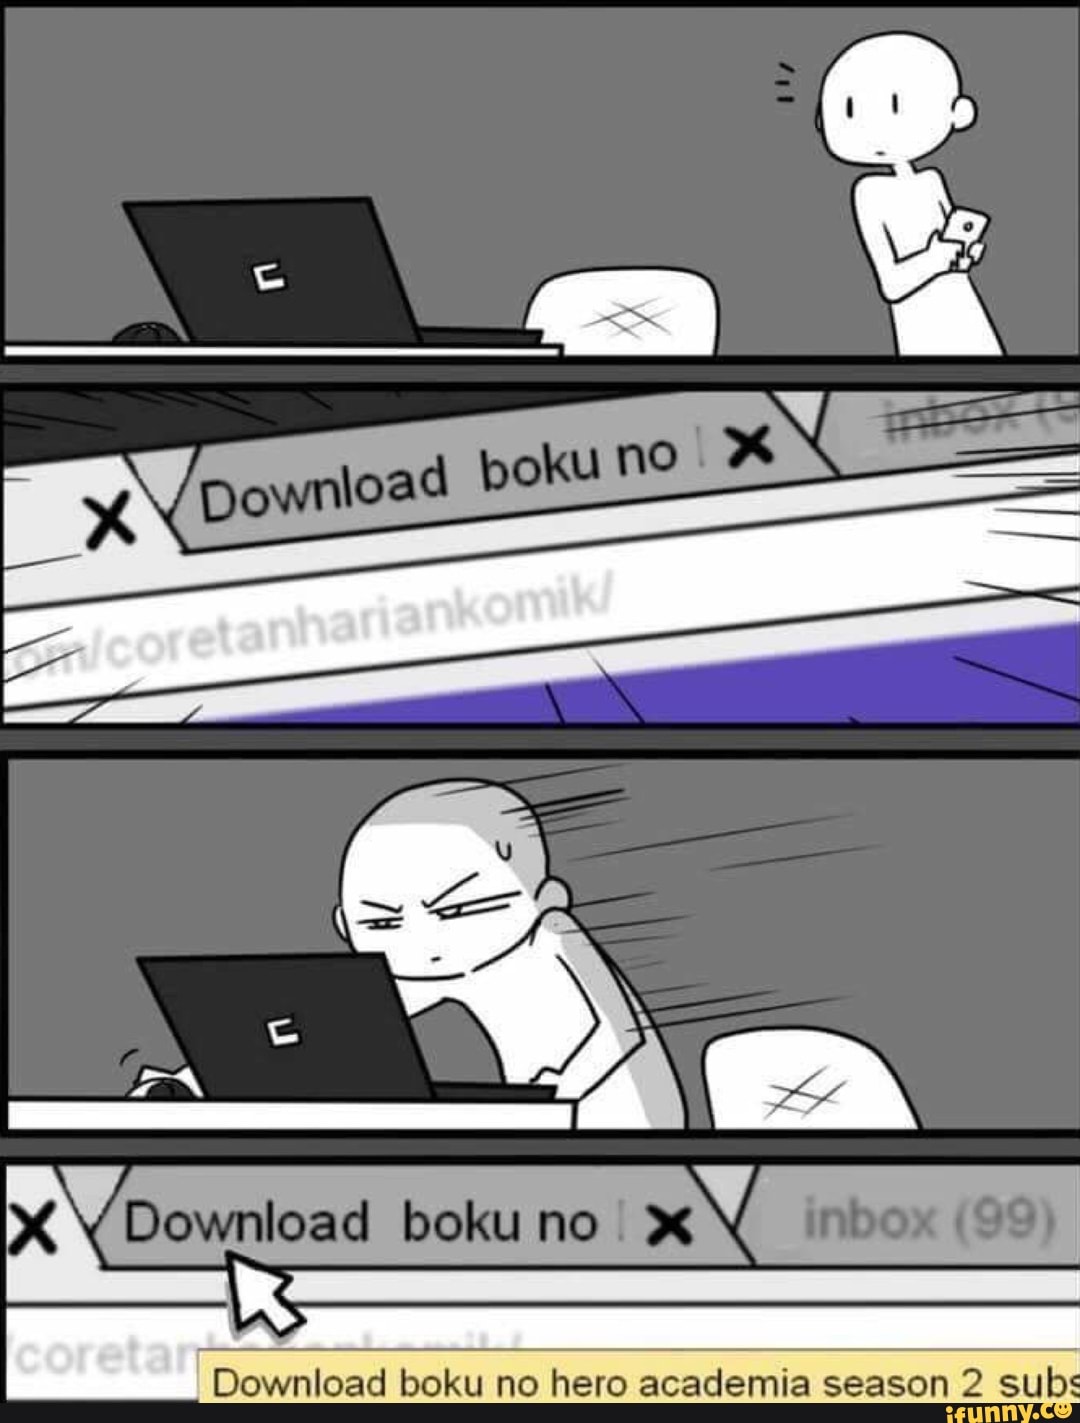 download boku no pico